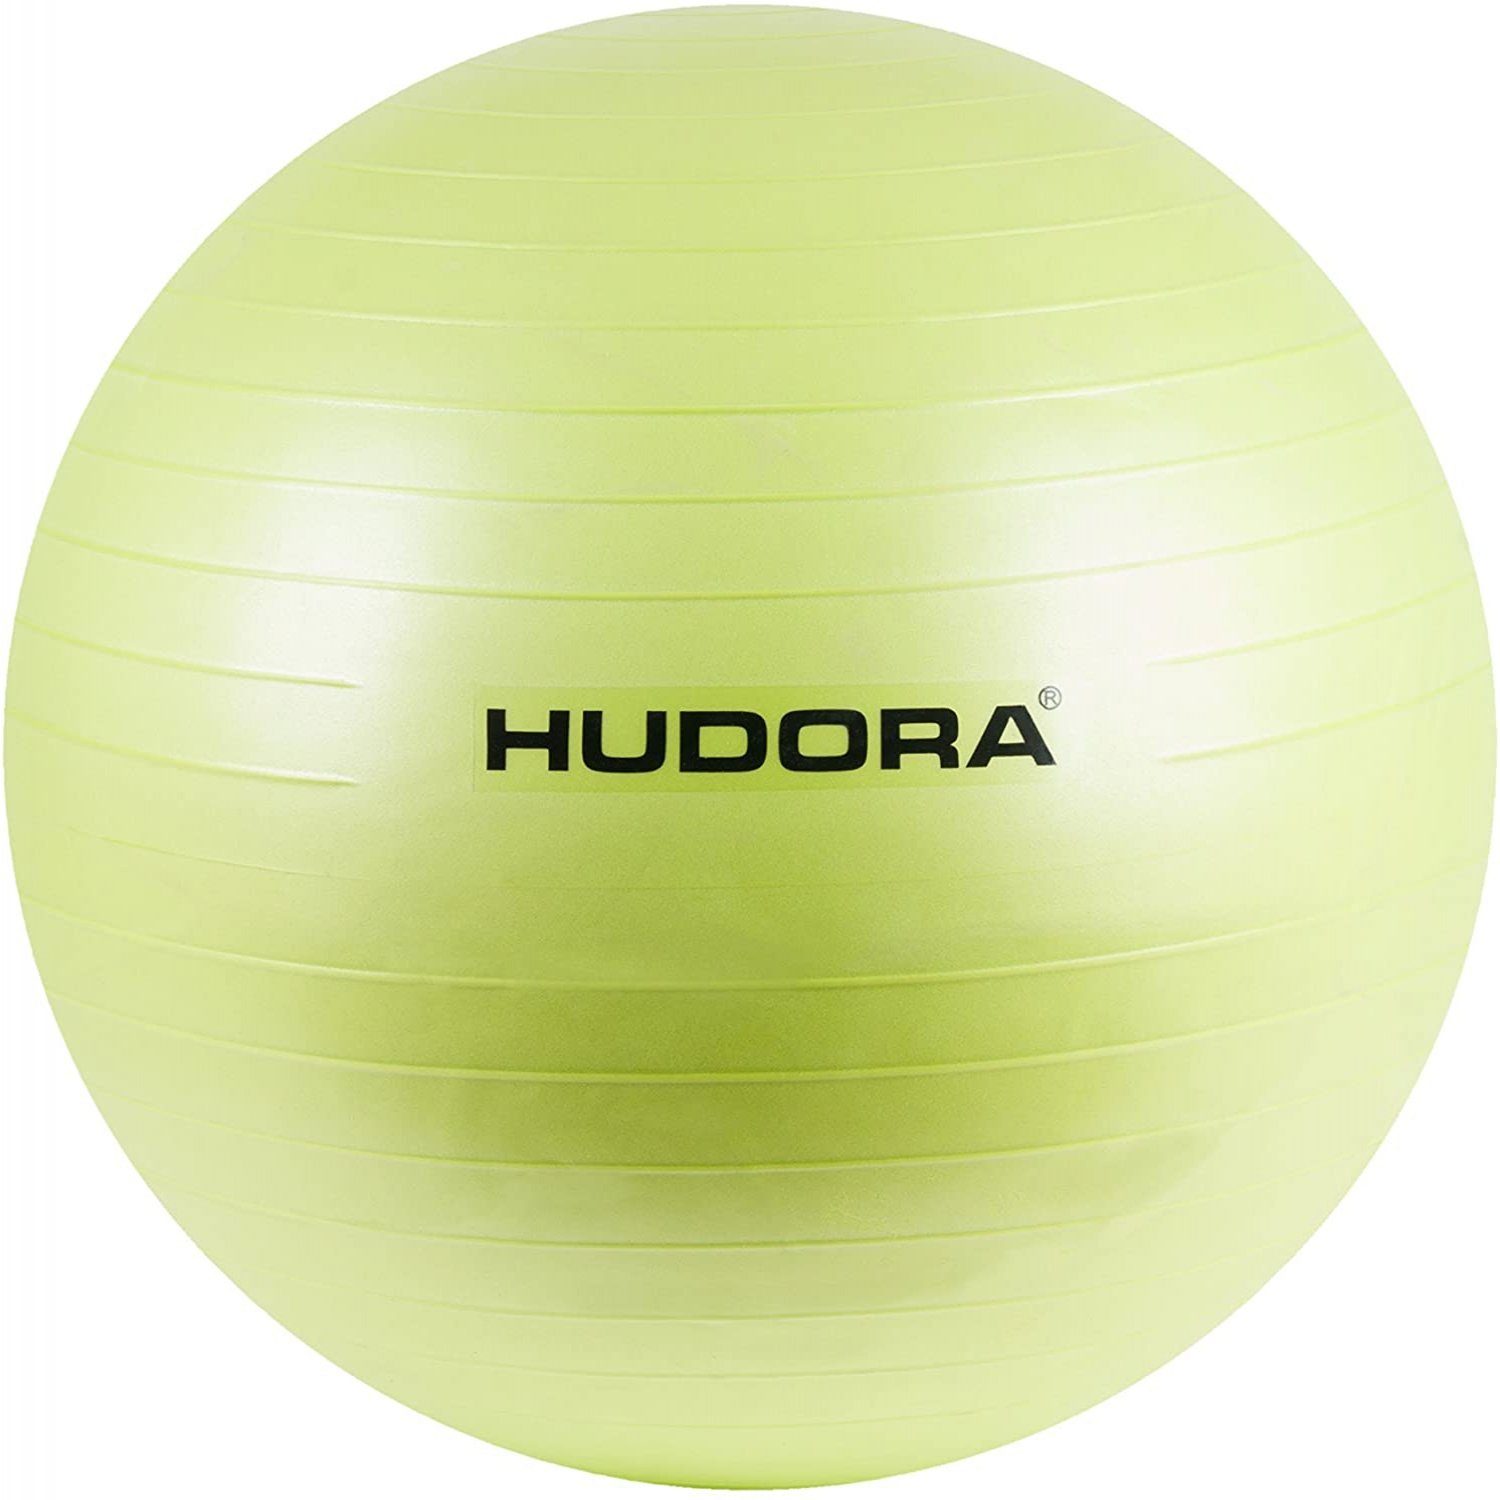 Hudora Gymnastikball HUDORA Fitness Yoga Reha Sport Gymnastik-Ball, lemon/grün, Ø 75 cm (Packung)